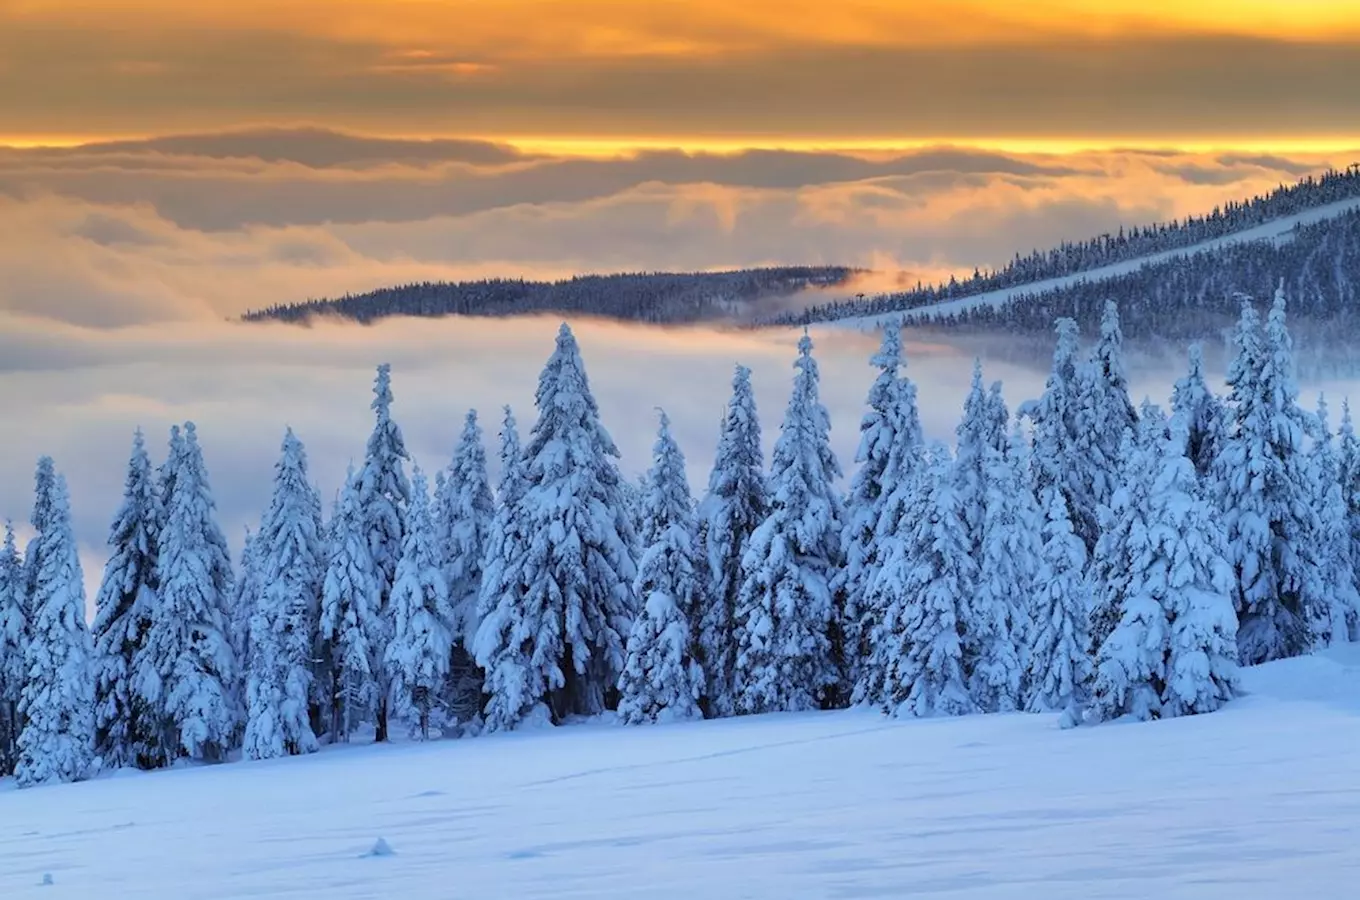 Užijte si zimní radovánky v Krkonoších, avšak s respektem k přírodě